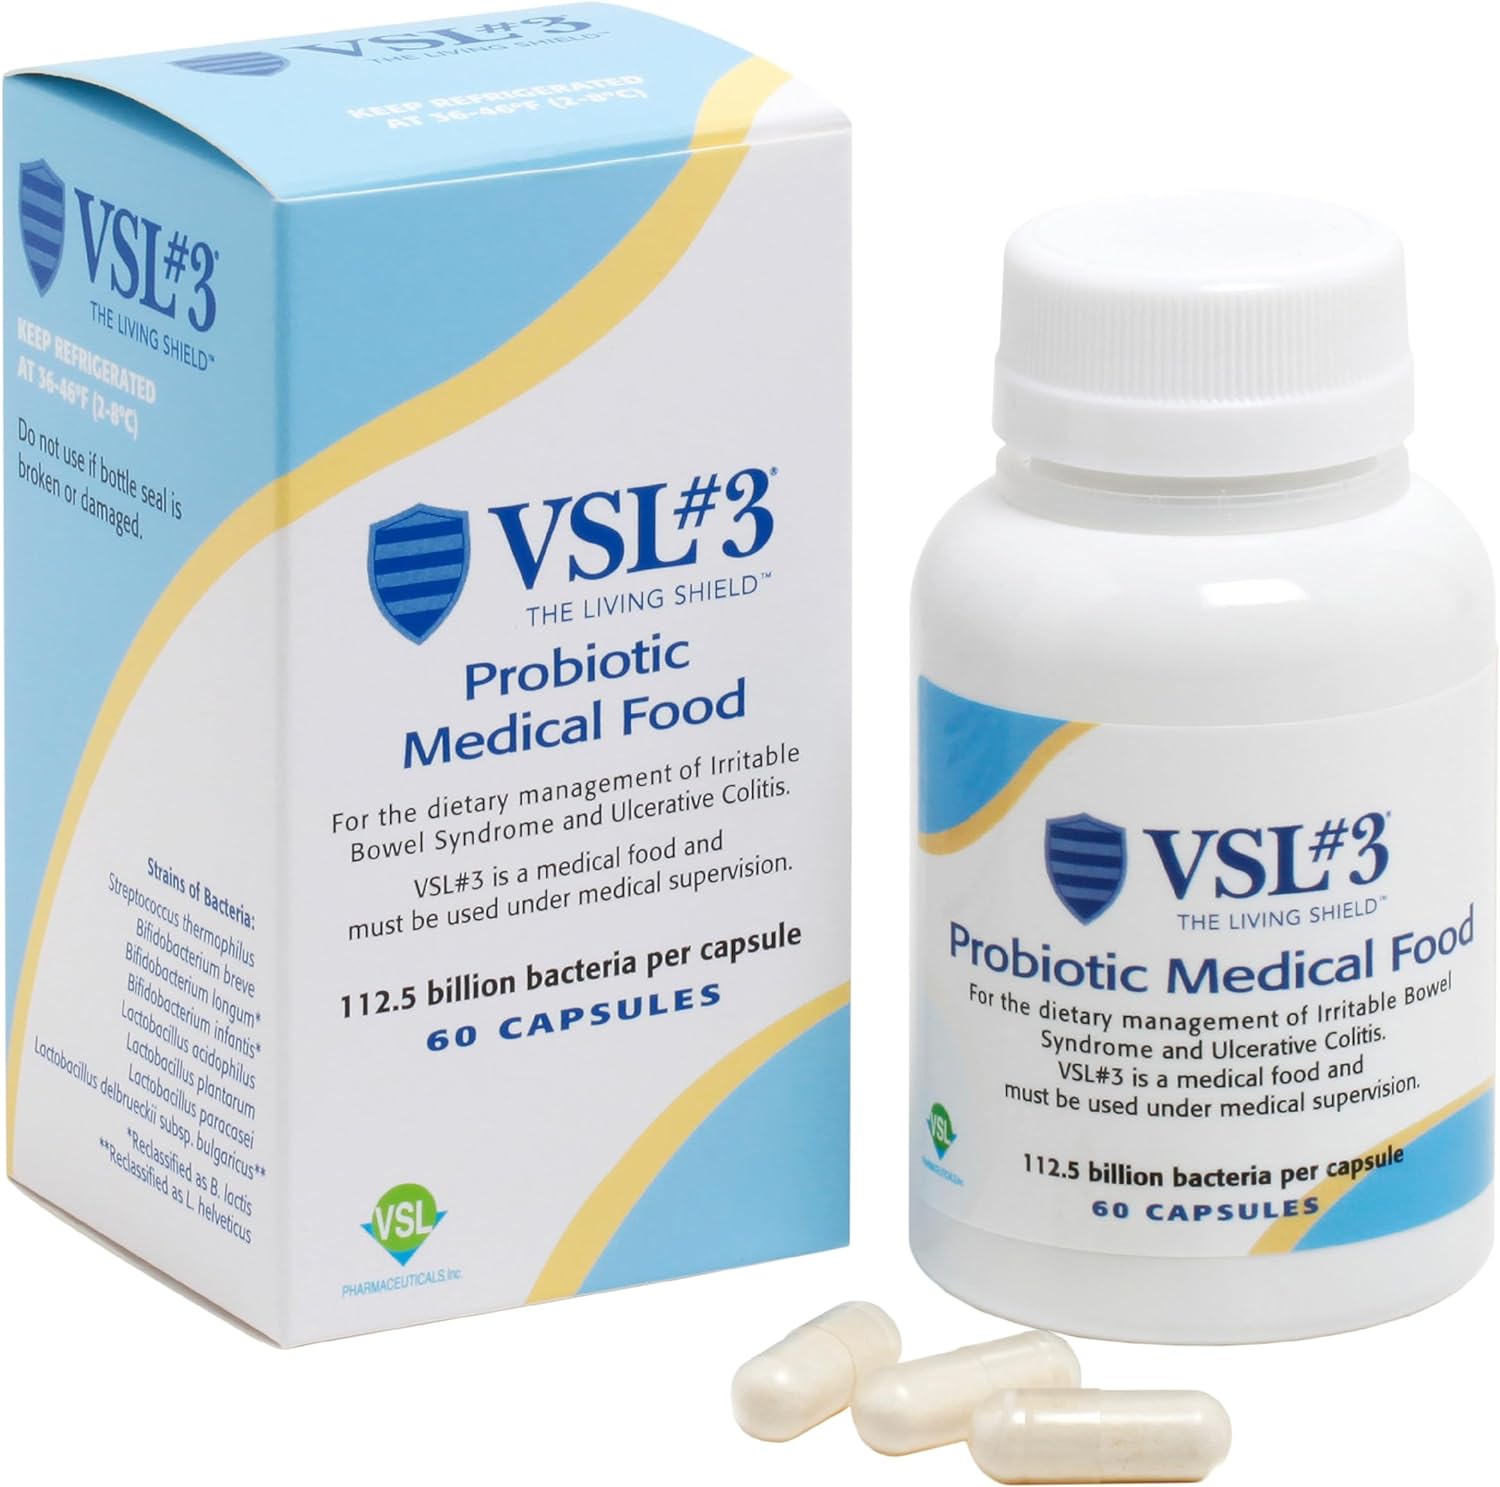 VSL #3 Probiotic Medical Food $75